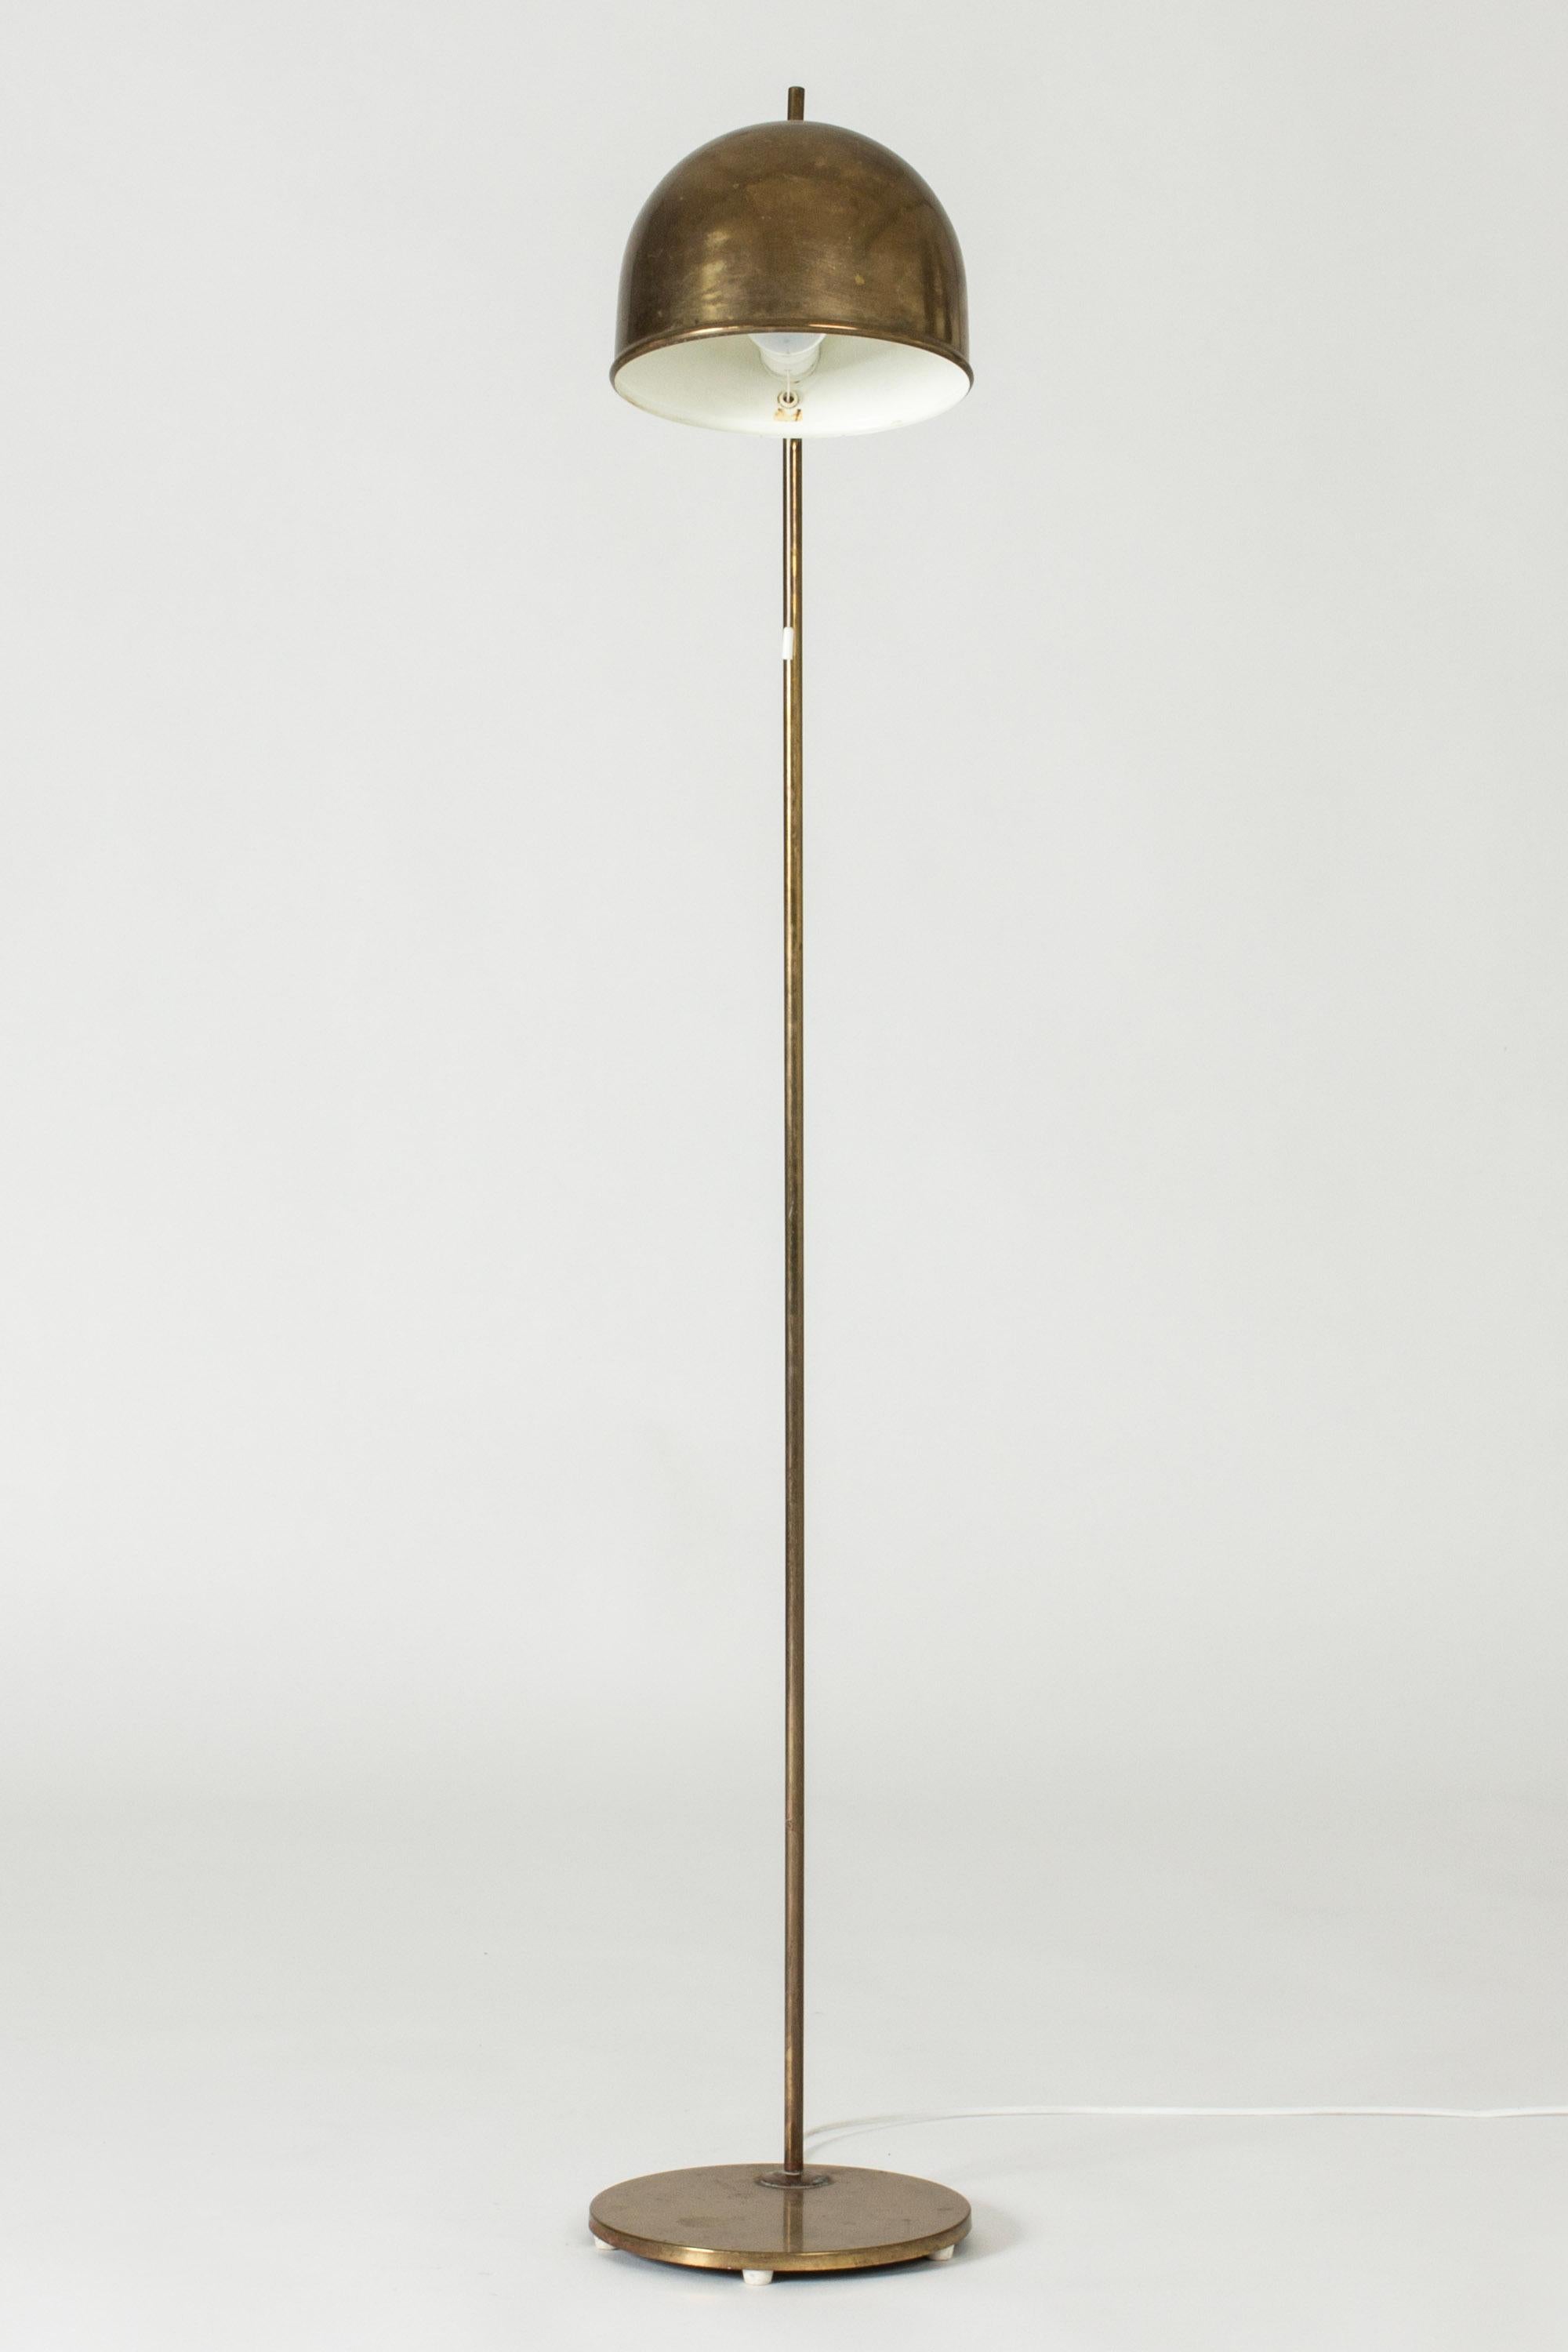 Lampadaire en laiton de Bergboms, au design épuré et arrondi, avec une petite pointe au sommet de l'abat-jour.